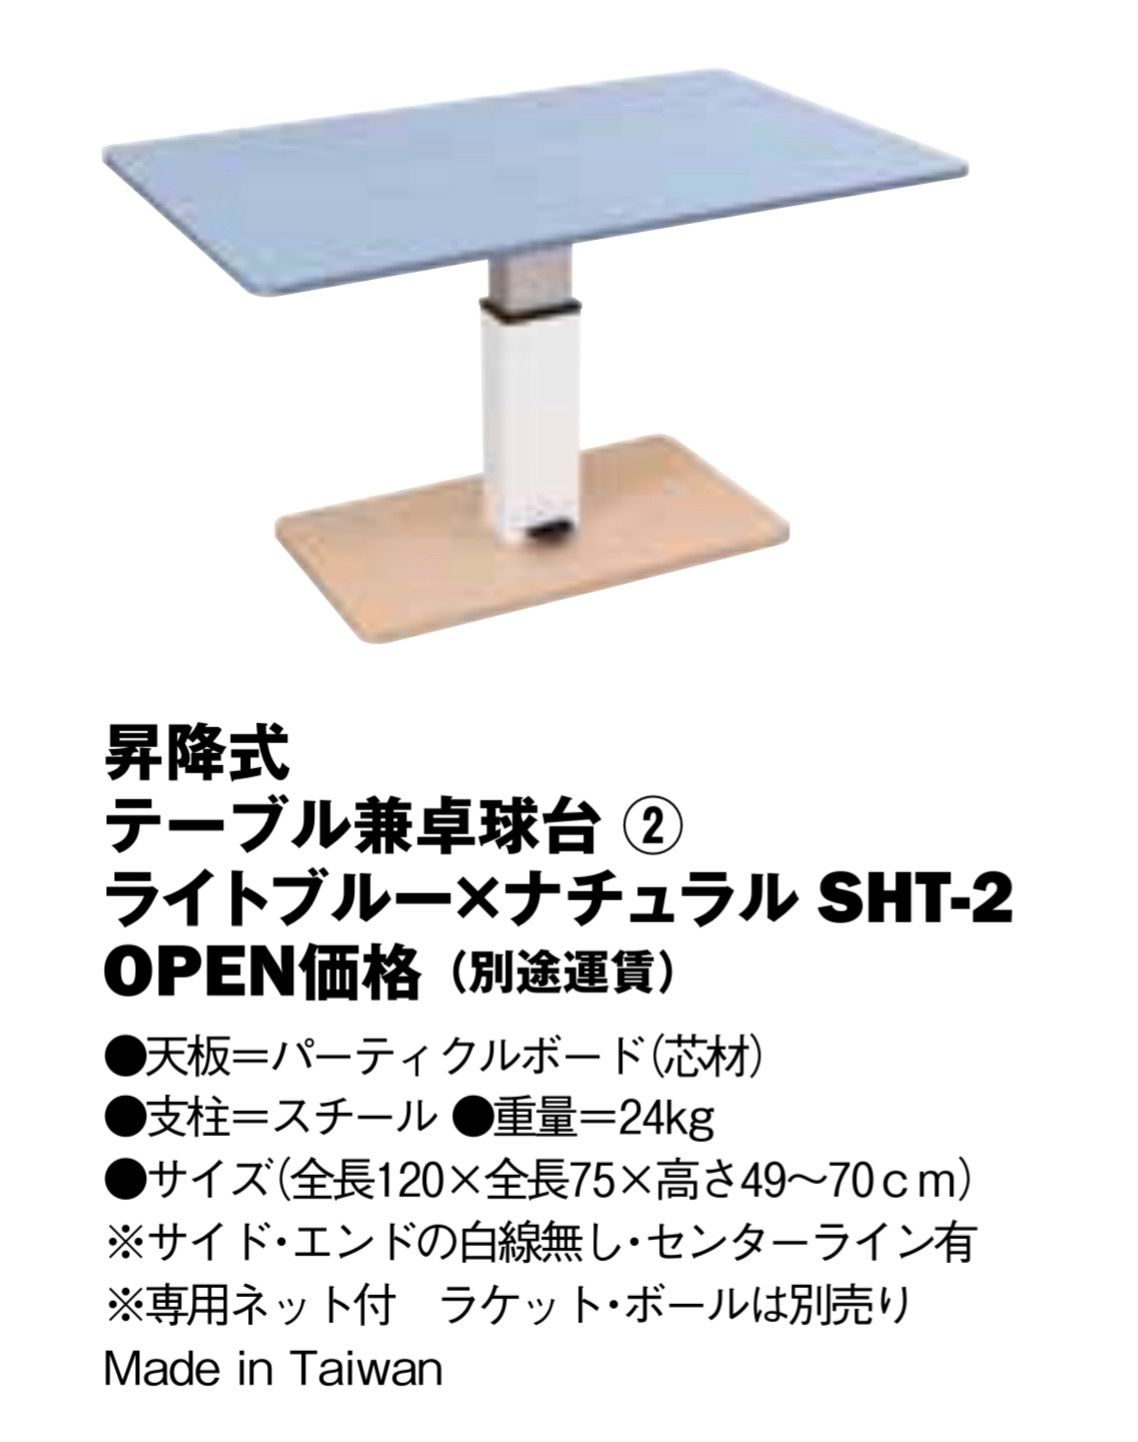 UNIVER 昇降式テーブル兼卓球台 - 卓球ショップ - メルカリ